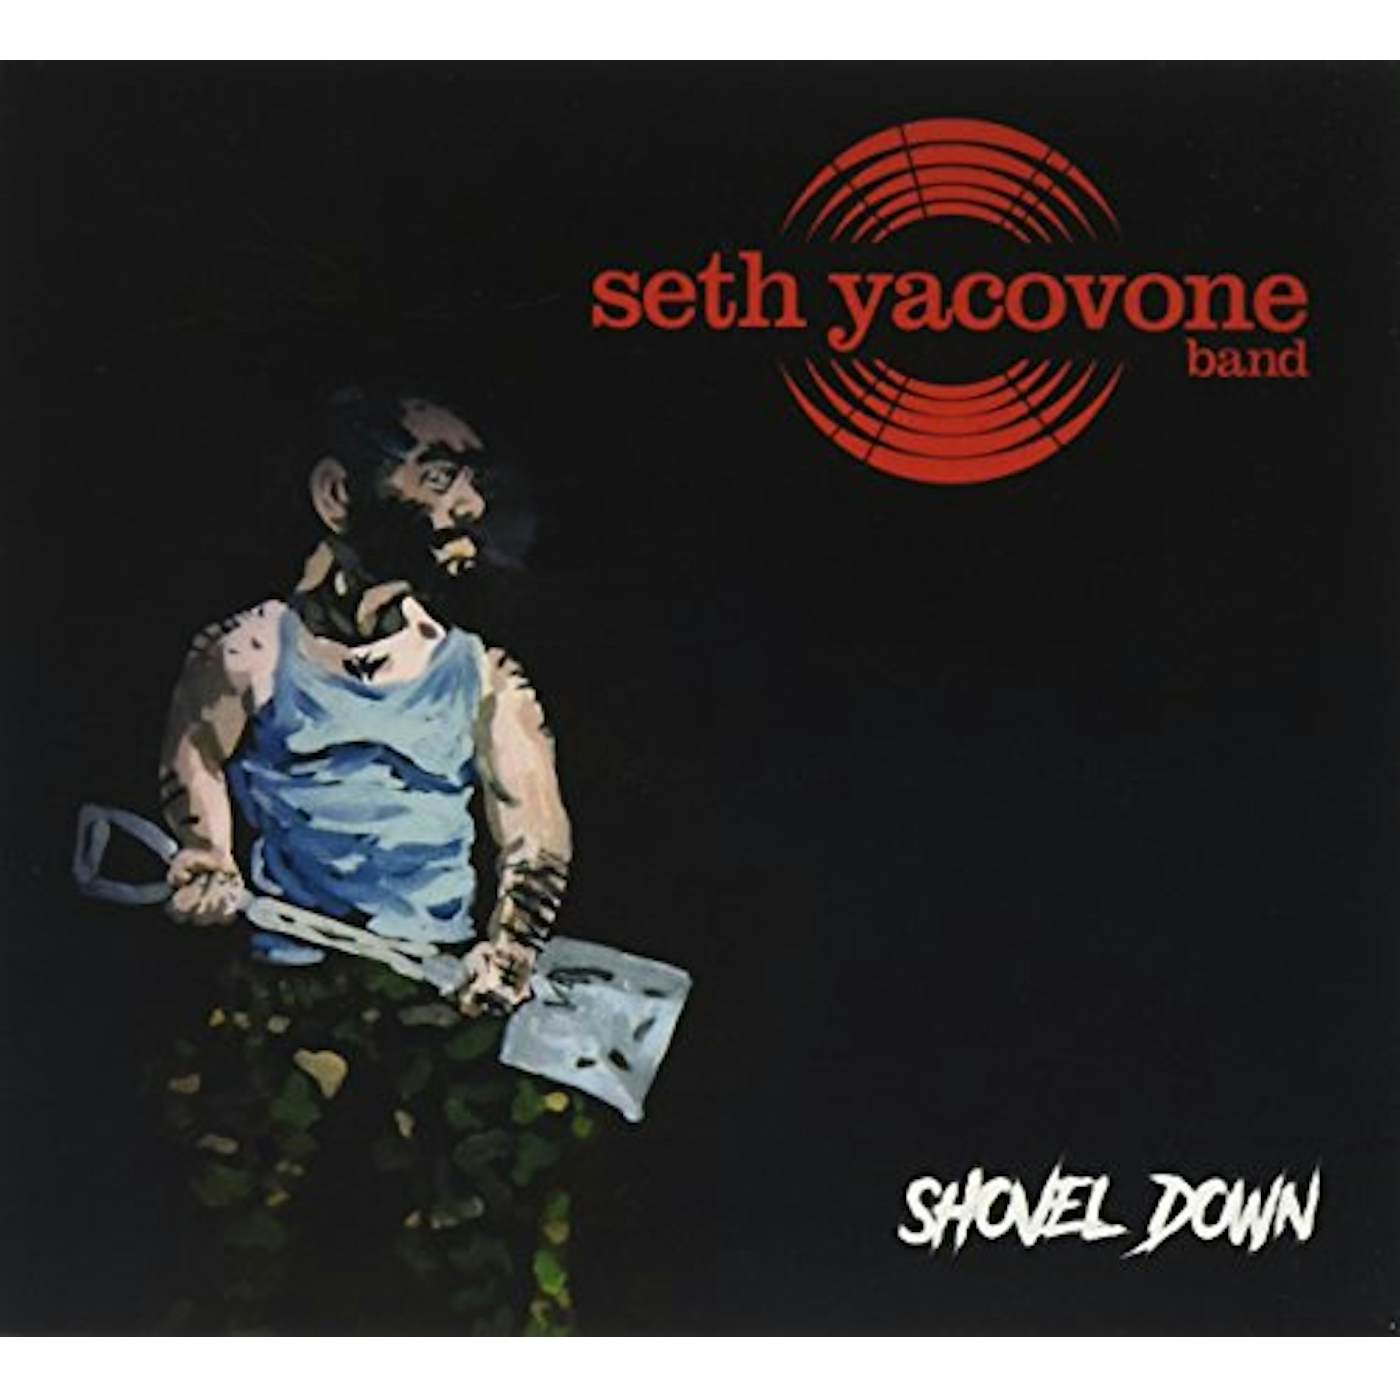 Seth Yacovone Band SHOVEL DOWN CD